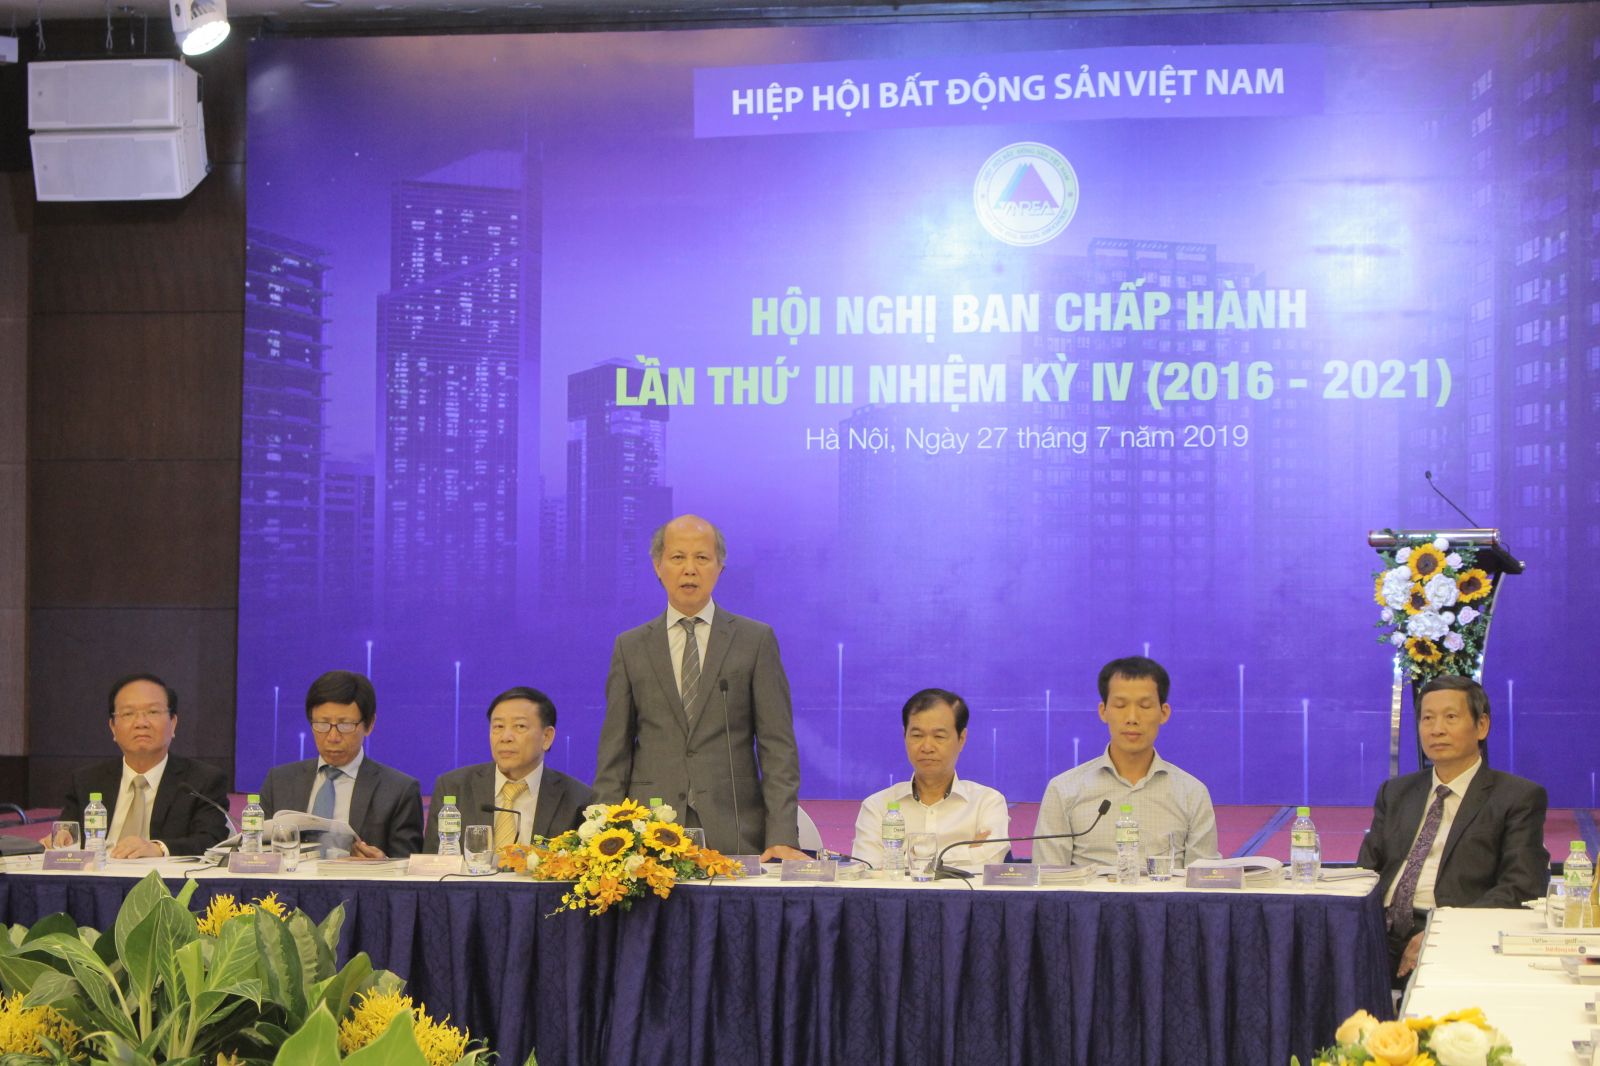 Ông Nguyễn Trần Nam - Chủ tịch Hiệp hội Bất động sản Việt Nam